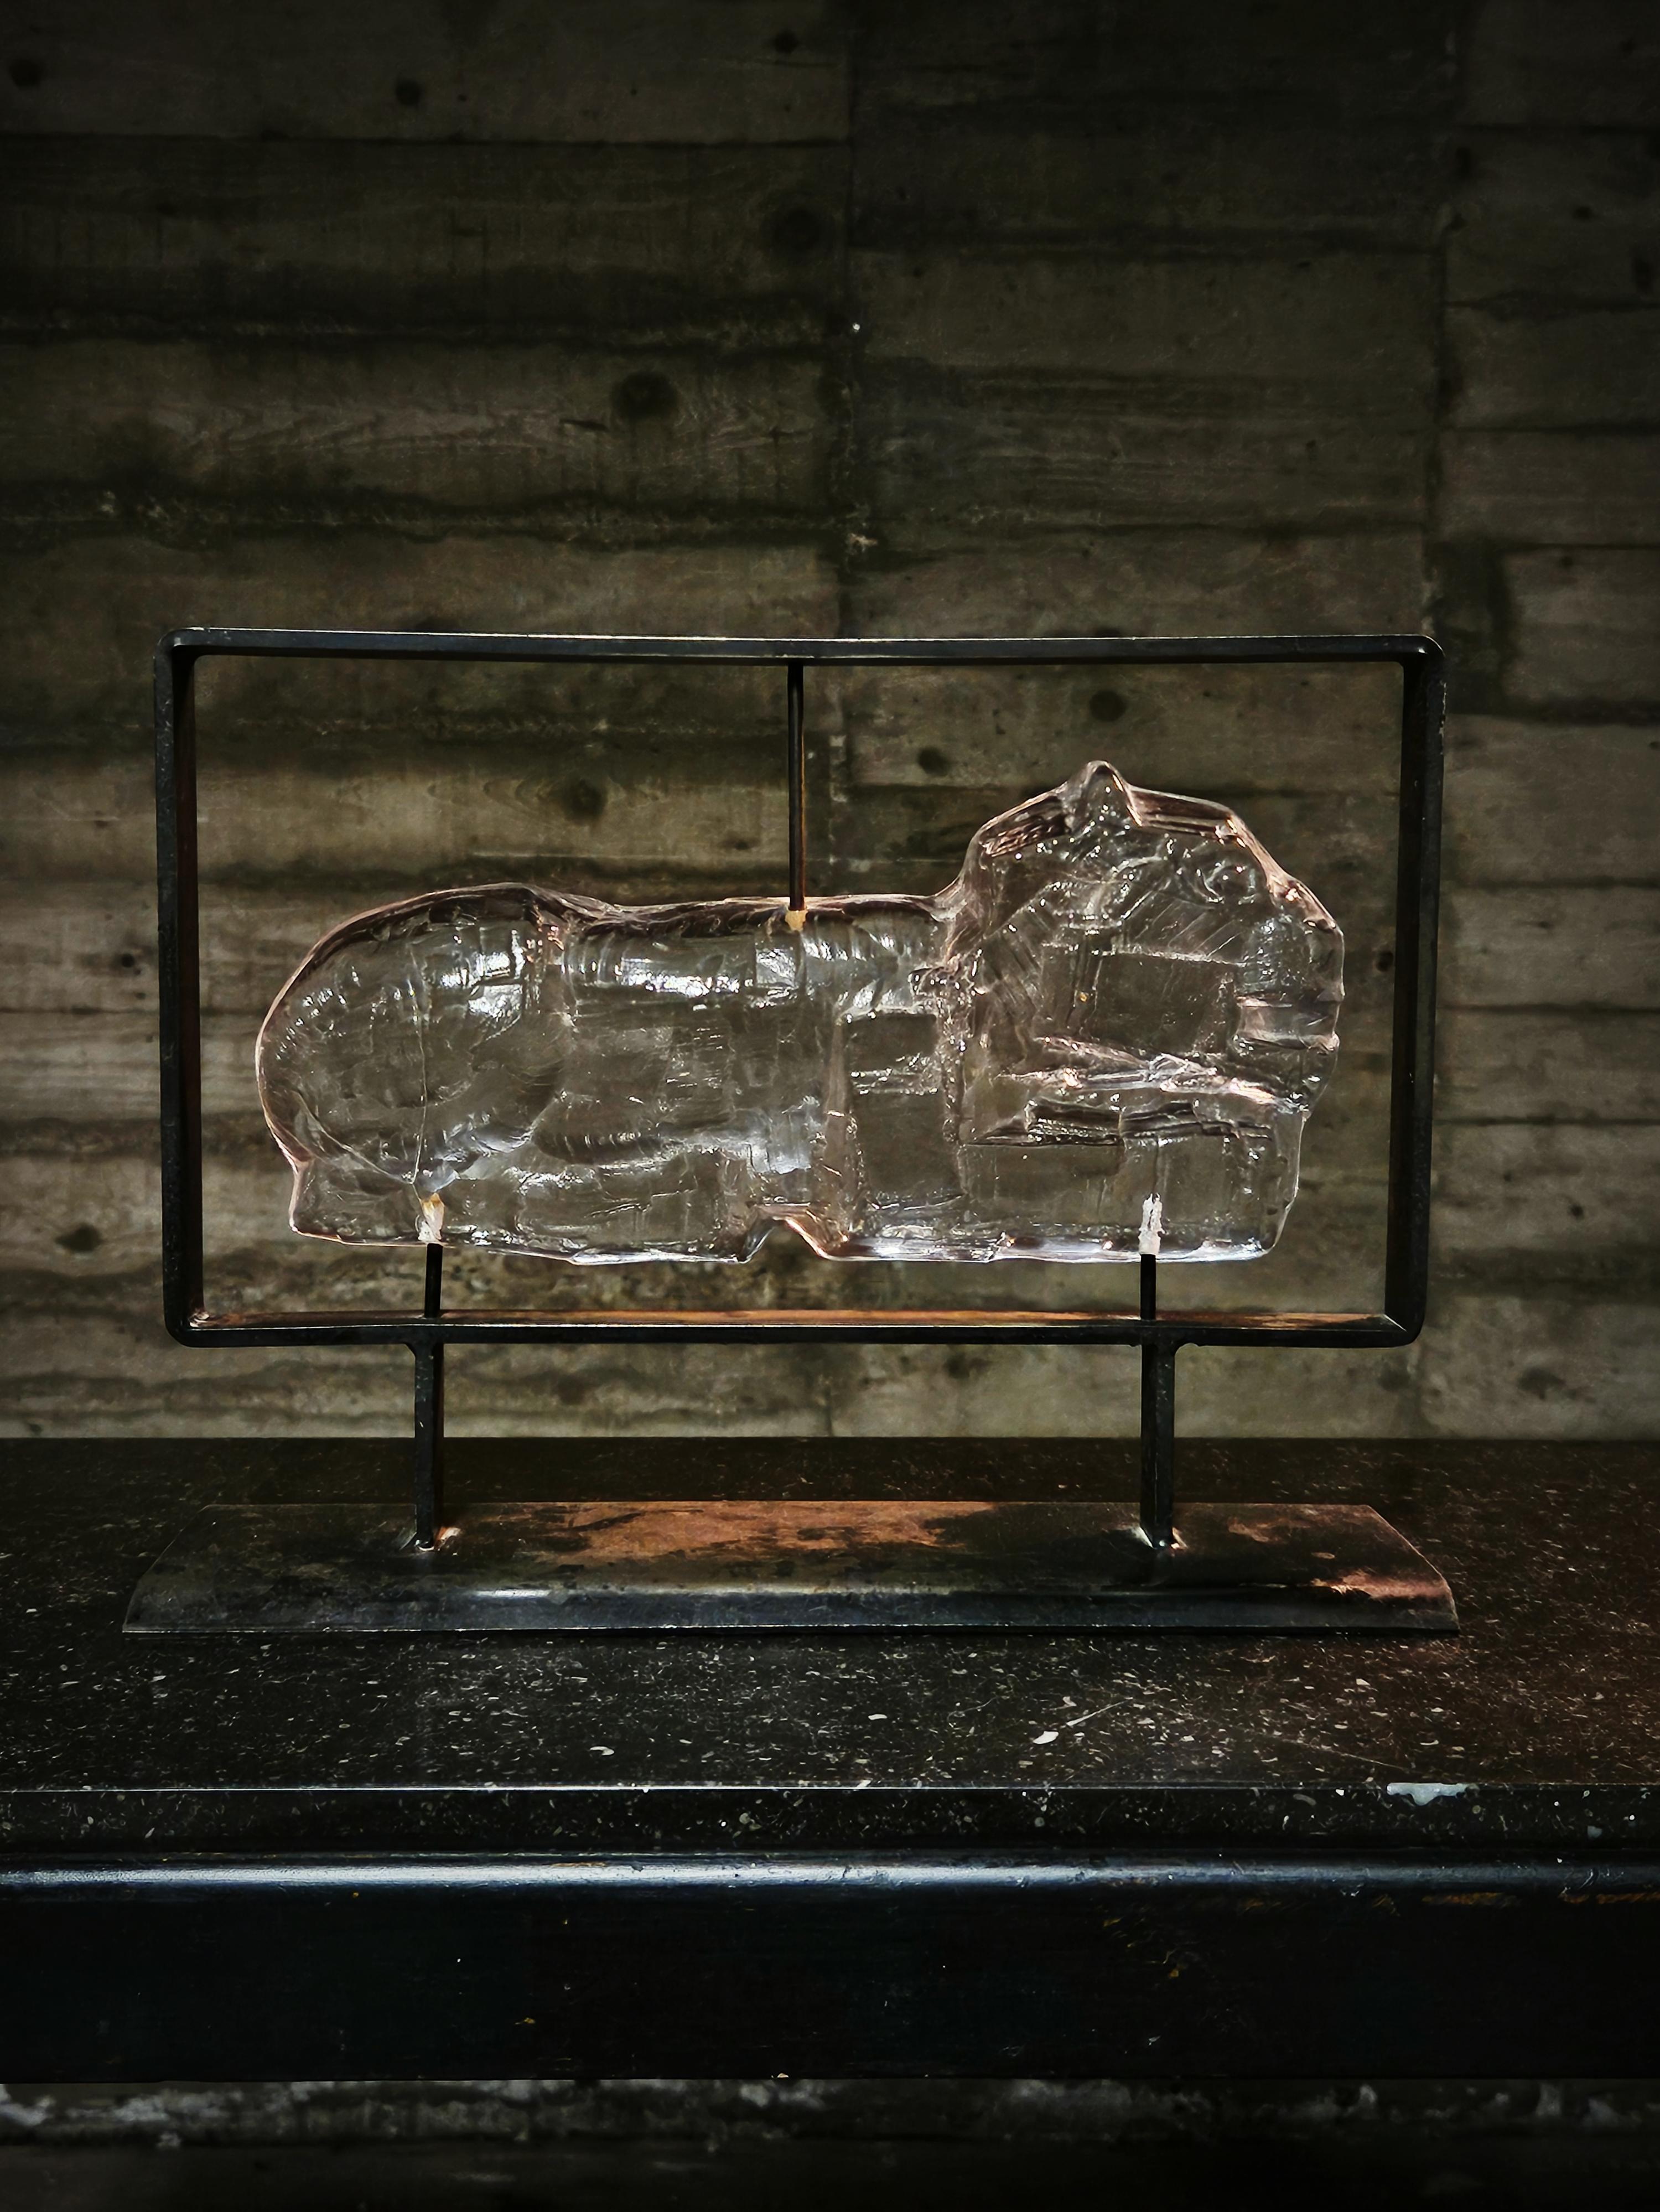 Glasskulptur eines Löwen auf einem rustikalen Stahlrahmen. Erik Höglund entwarf dieses Stück Mitte des 20. Jahrhunderts für Boda glasbruk. 

Teilweise abgenutzte Oberfläche am Rahmen. Glas in ausgezeichnetem Zustand. 